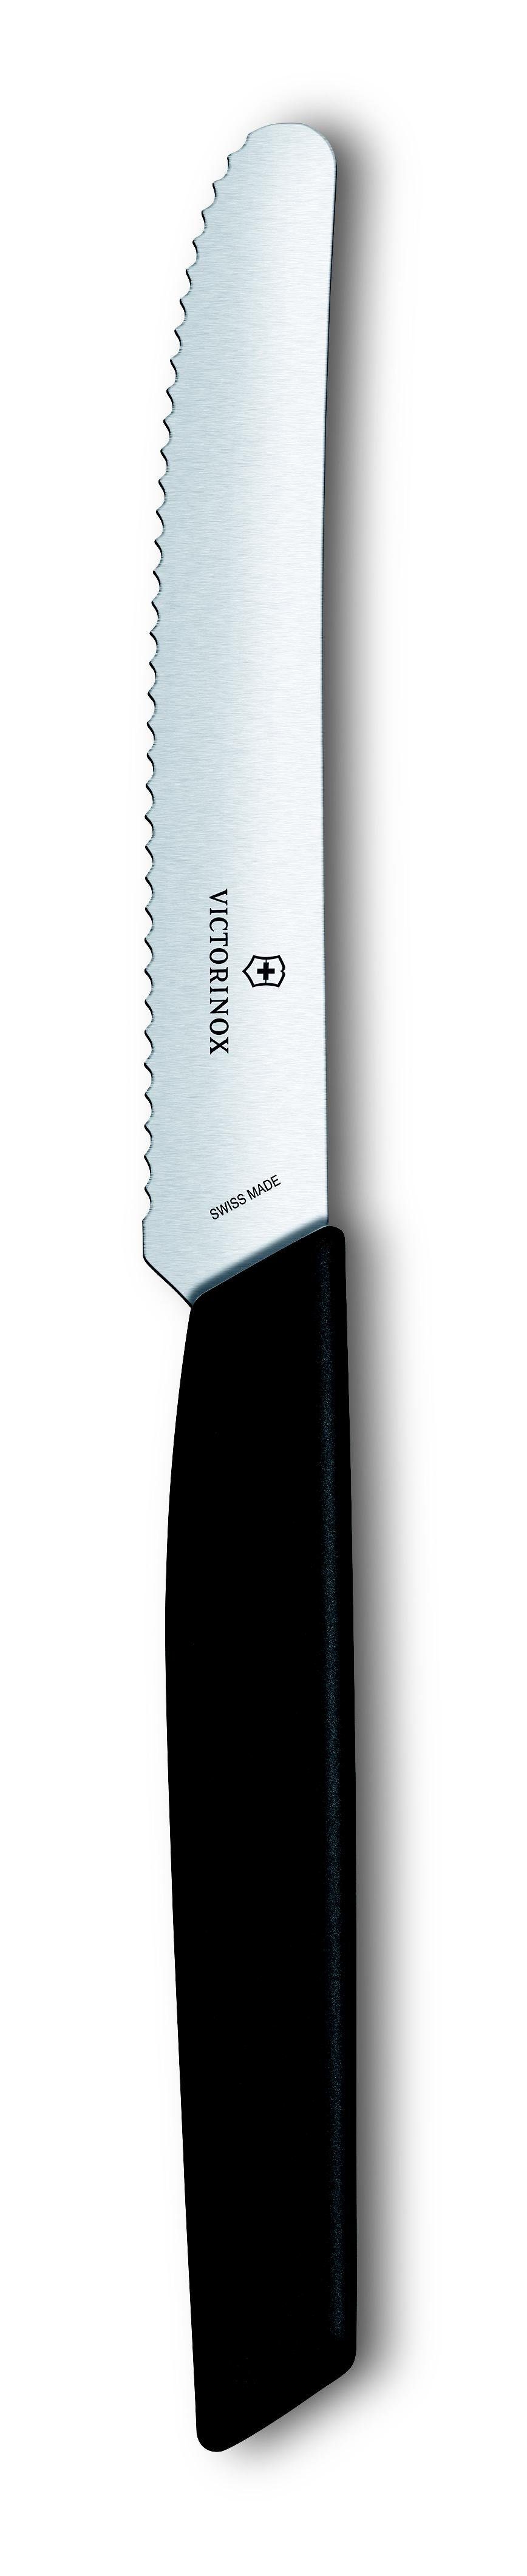 Victorinox Taschenmesser Swiss schwarz Tafelmesser, 11cm, Wellens, Modern & Tomaten